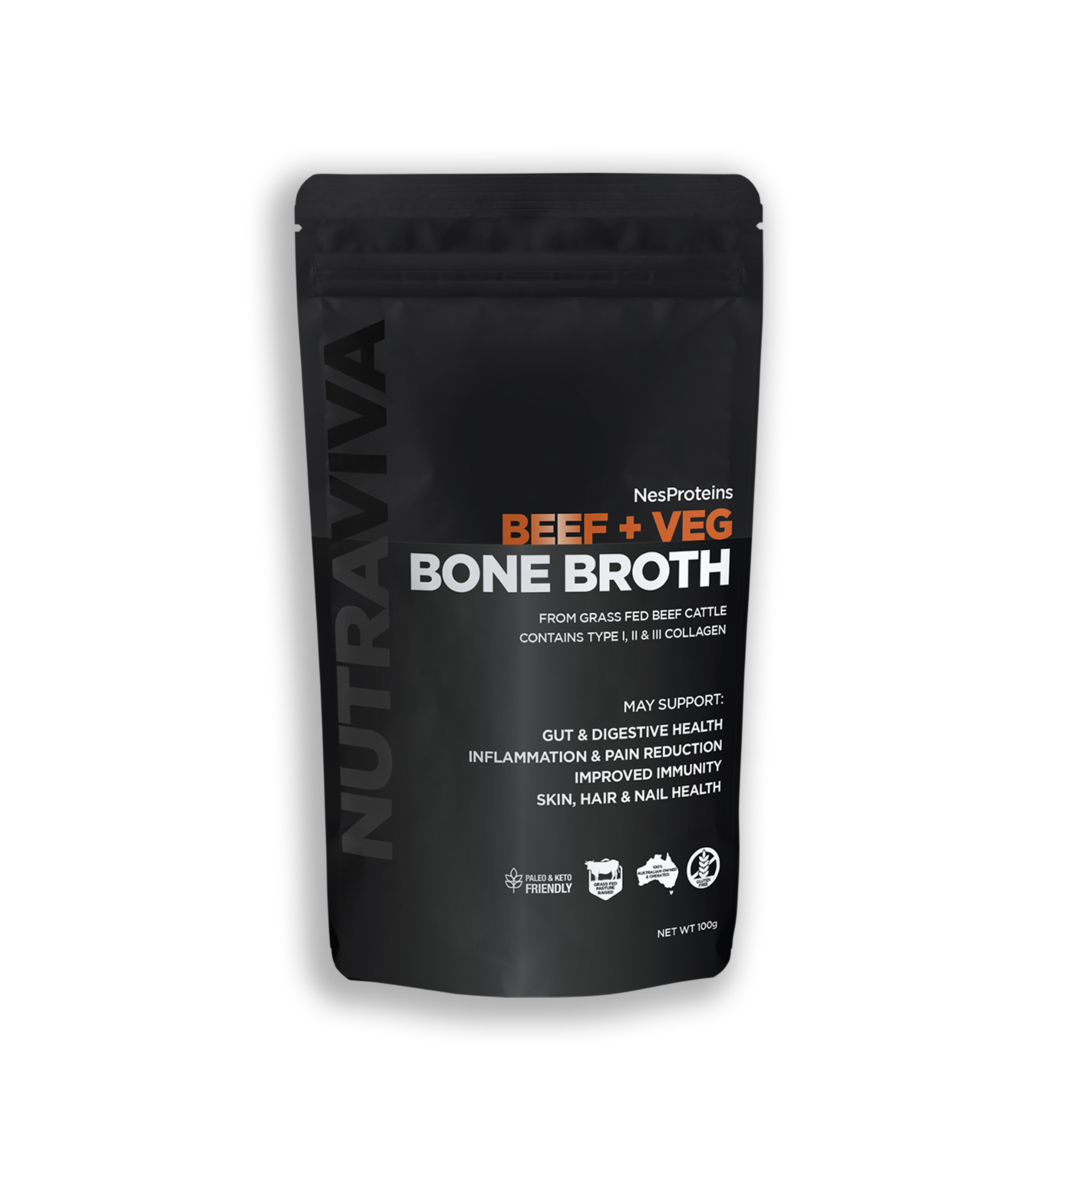 nutraviva nesproteins bone broth beef beef + veg